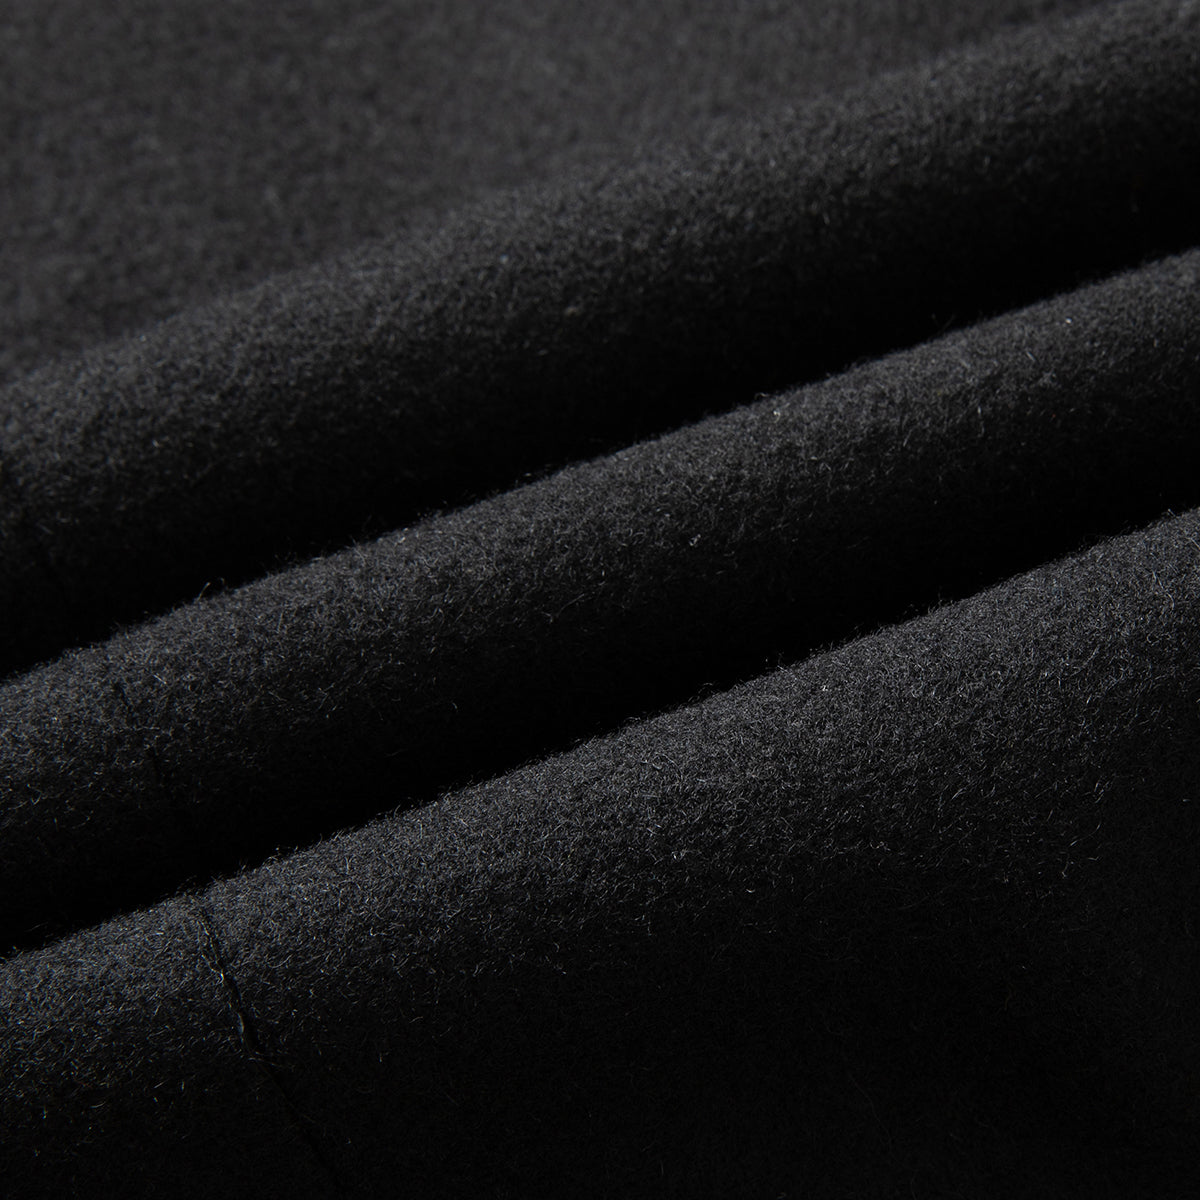 Mens Solid Color Casual Coat Black